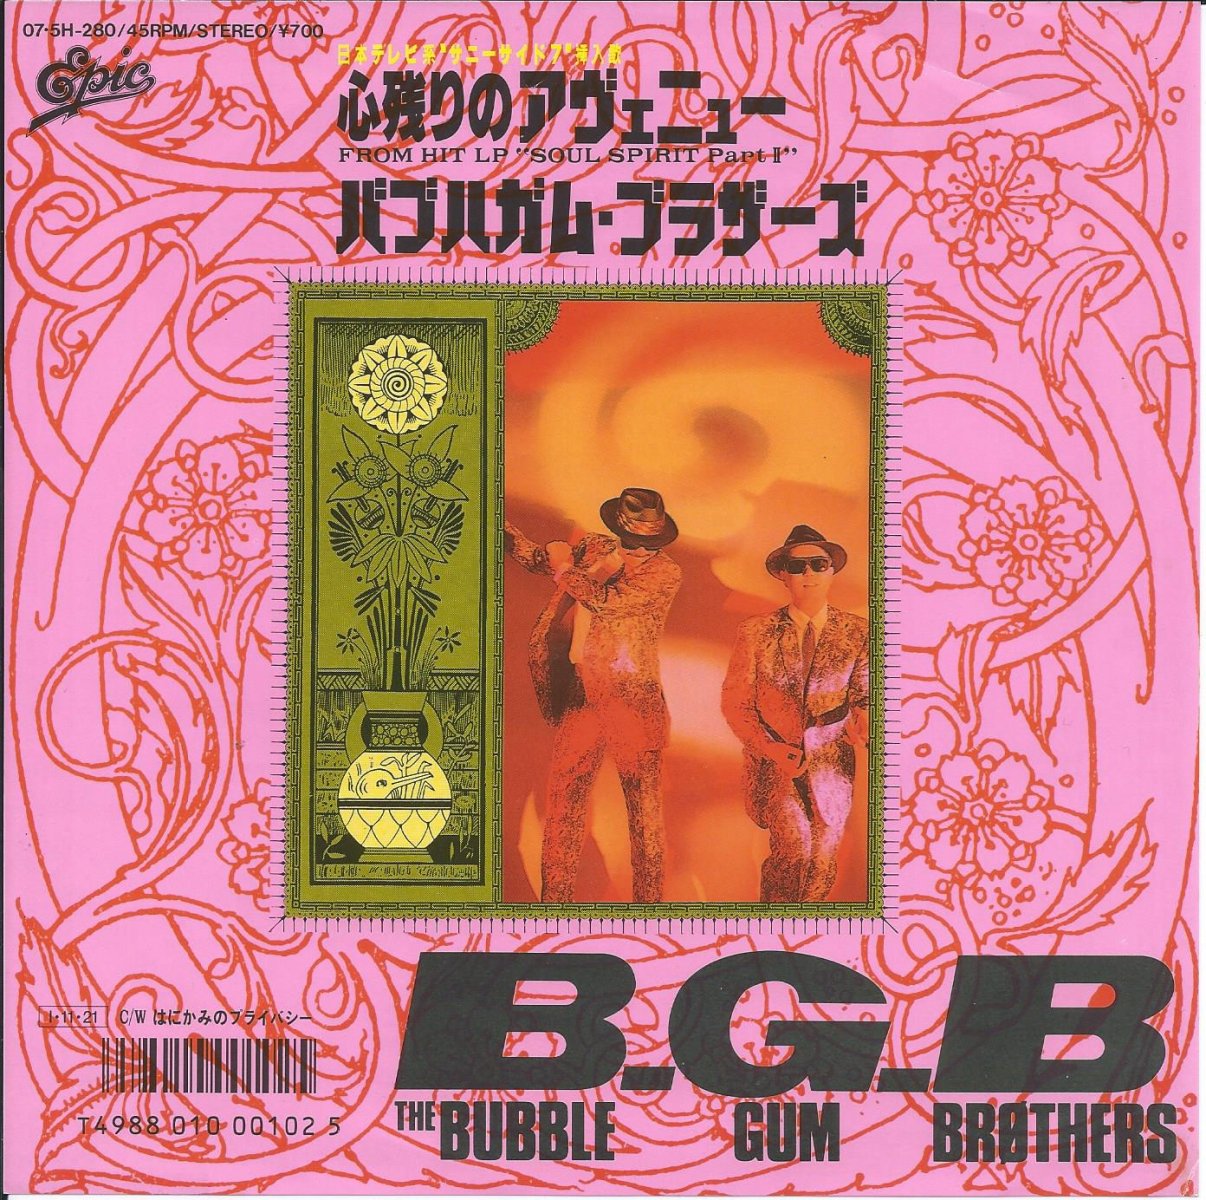 バブルガム・ブラザーズ THE BUBBLE GUM BROTHERS (B.G.B.) / 心残りのアヴェニュー (7) - HIP TANK  RECORDS